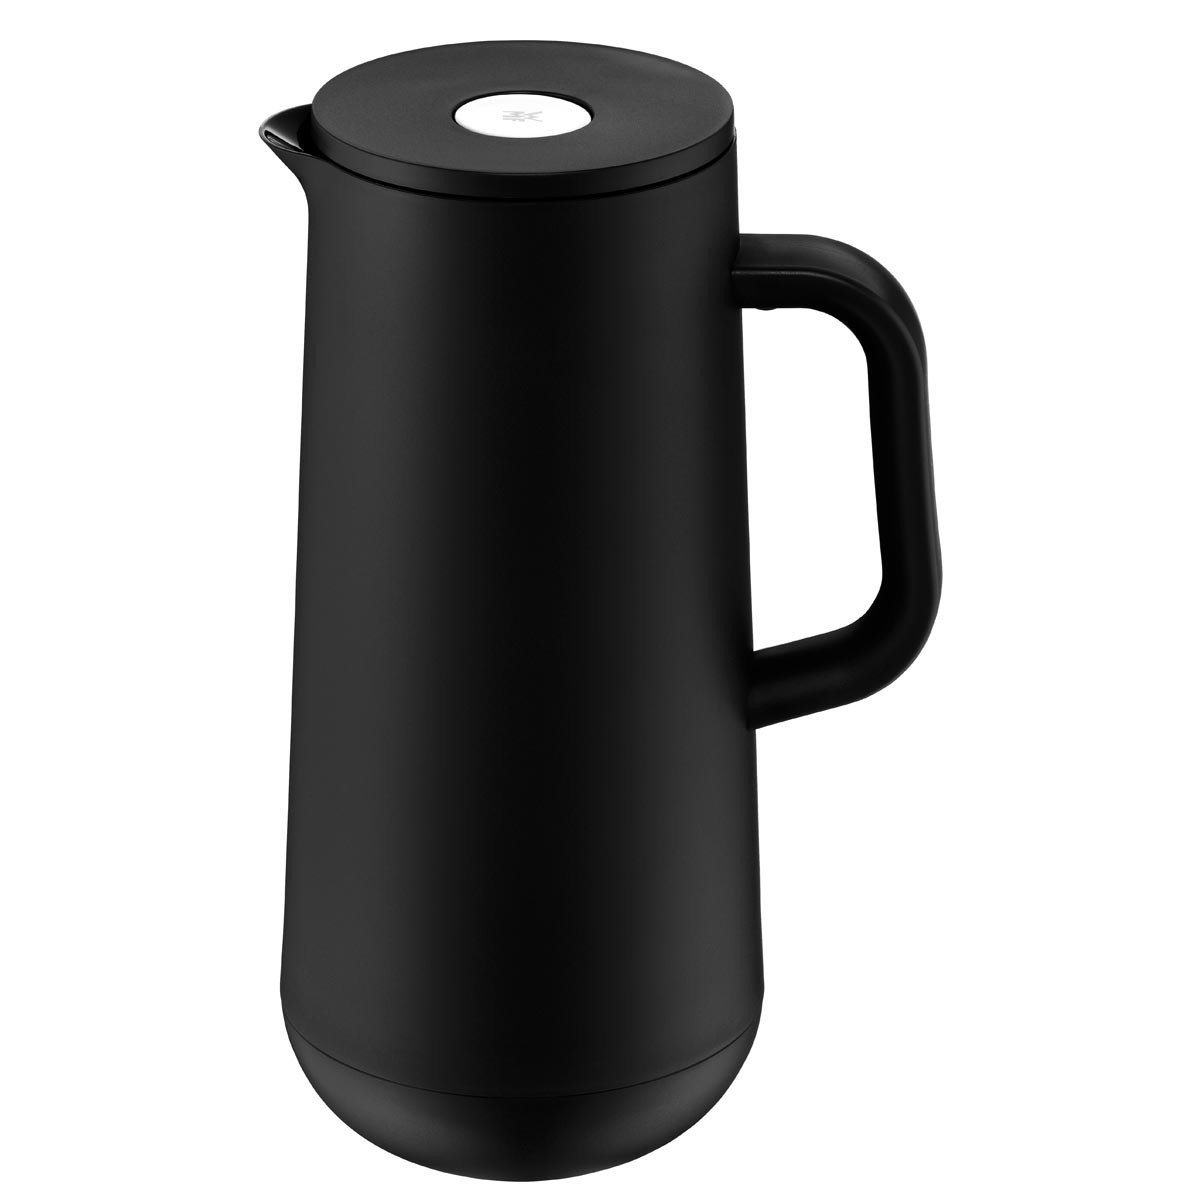 WMF pojemnik izolacyjny Impulse czarna kawa herbata  L, wysokość 28,5 cm szklany wkład automatyczny zamknięcie 24h zimnej i ciepłej pudełku na prezent 690697390